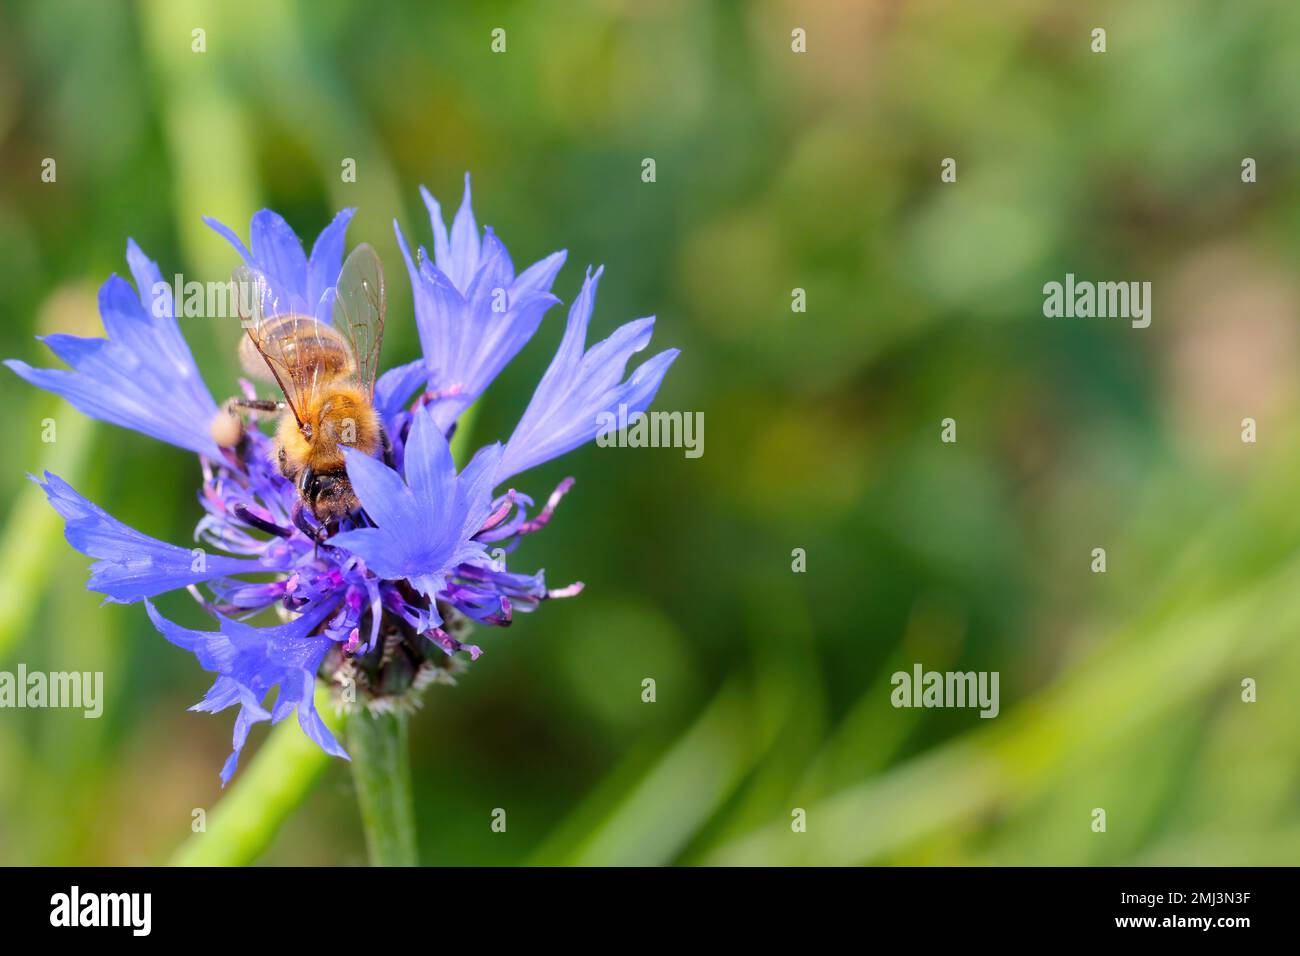 Honigbiene (APIs mellifera) bestäubende Blüten von Centaurea cyanus, gemeinhin bekannt als Maisblume oder Junggesellen-Knopf. Stockfoto